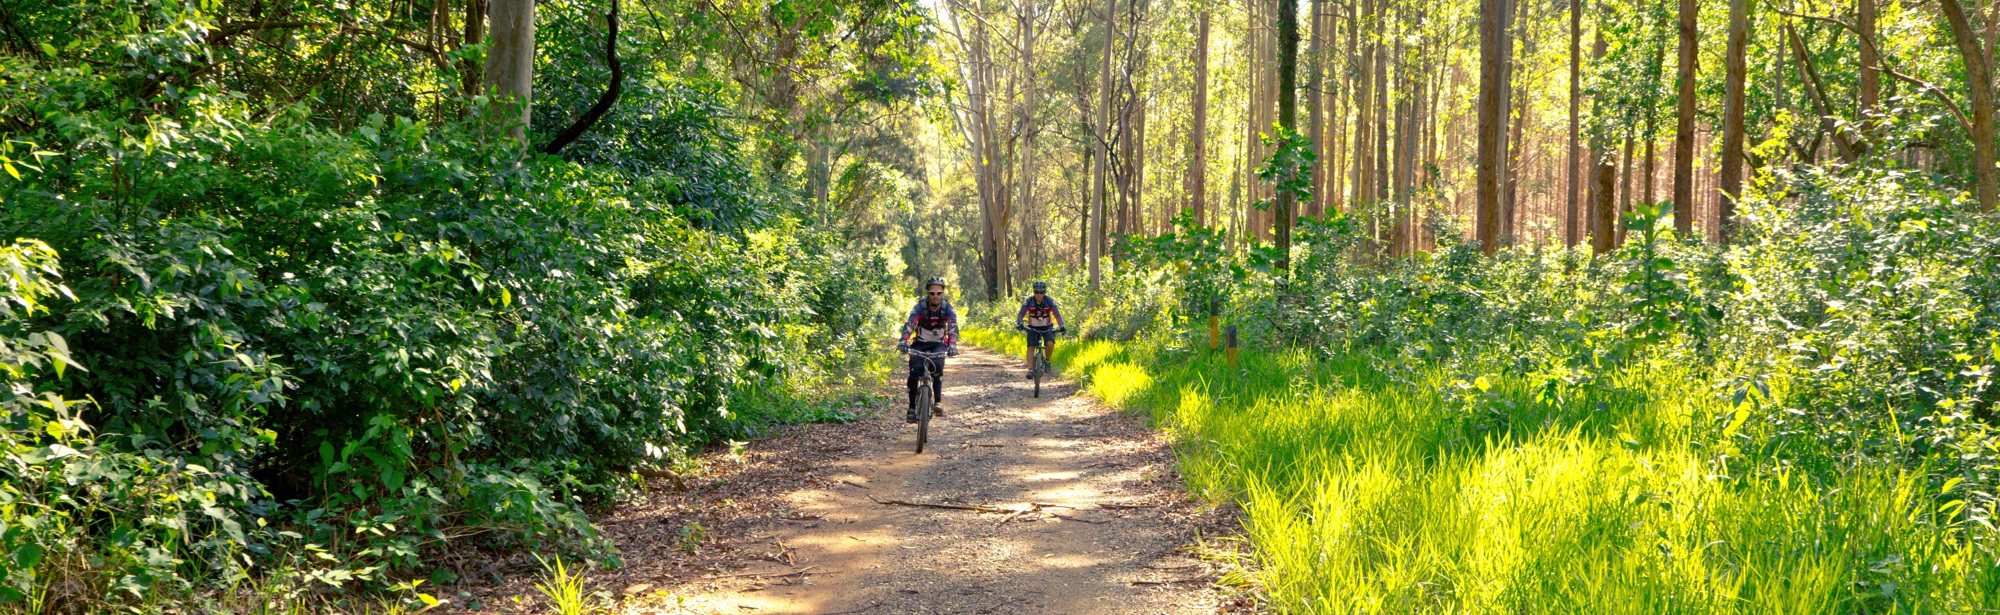 Twee mountainbikers fietsen over een bospad omgeven met groen gras en hoge bomen